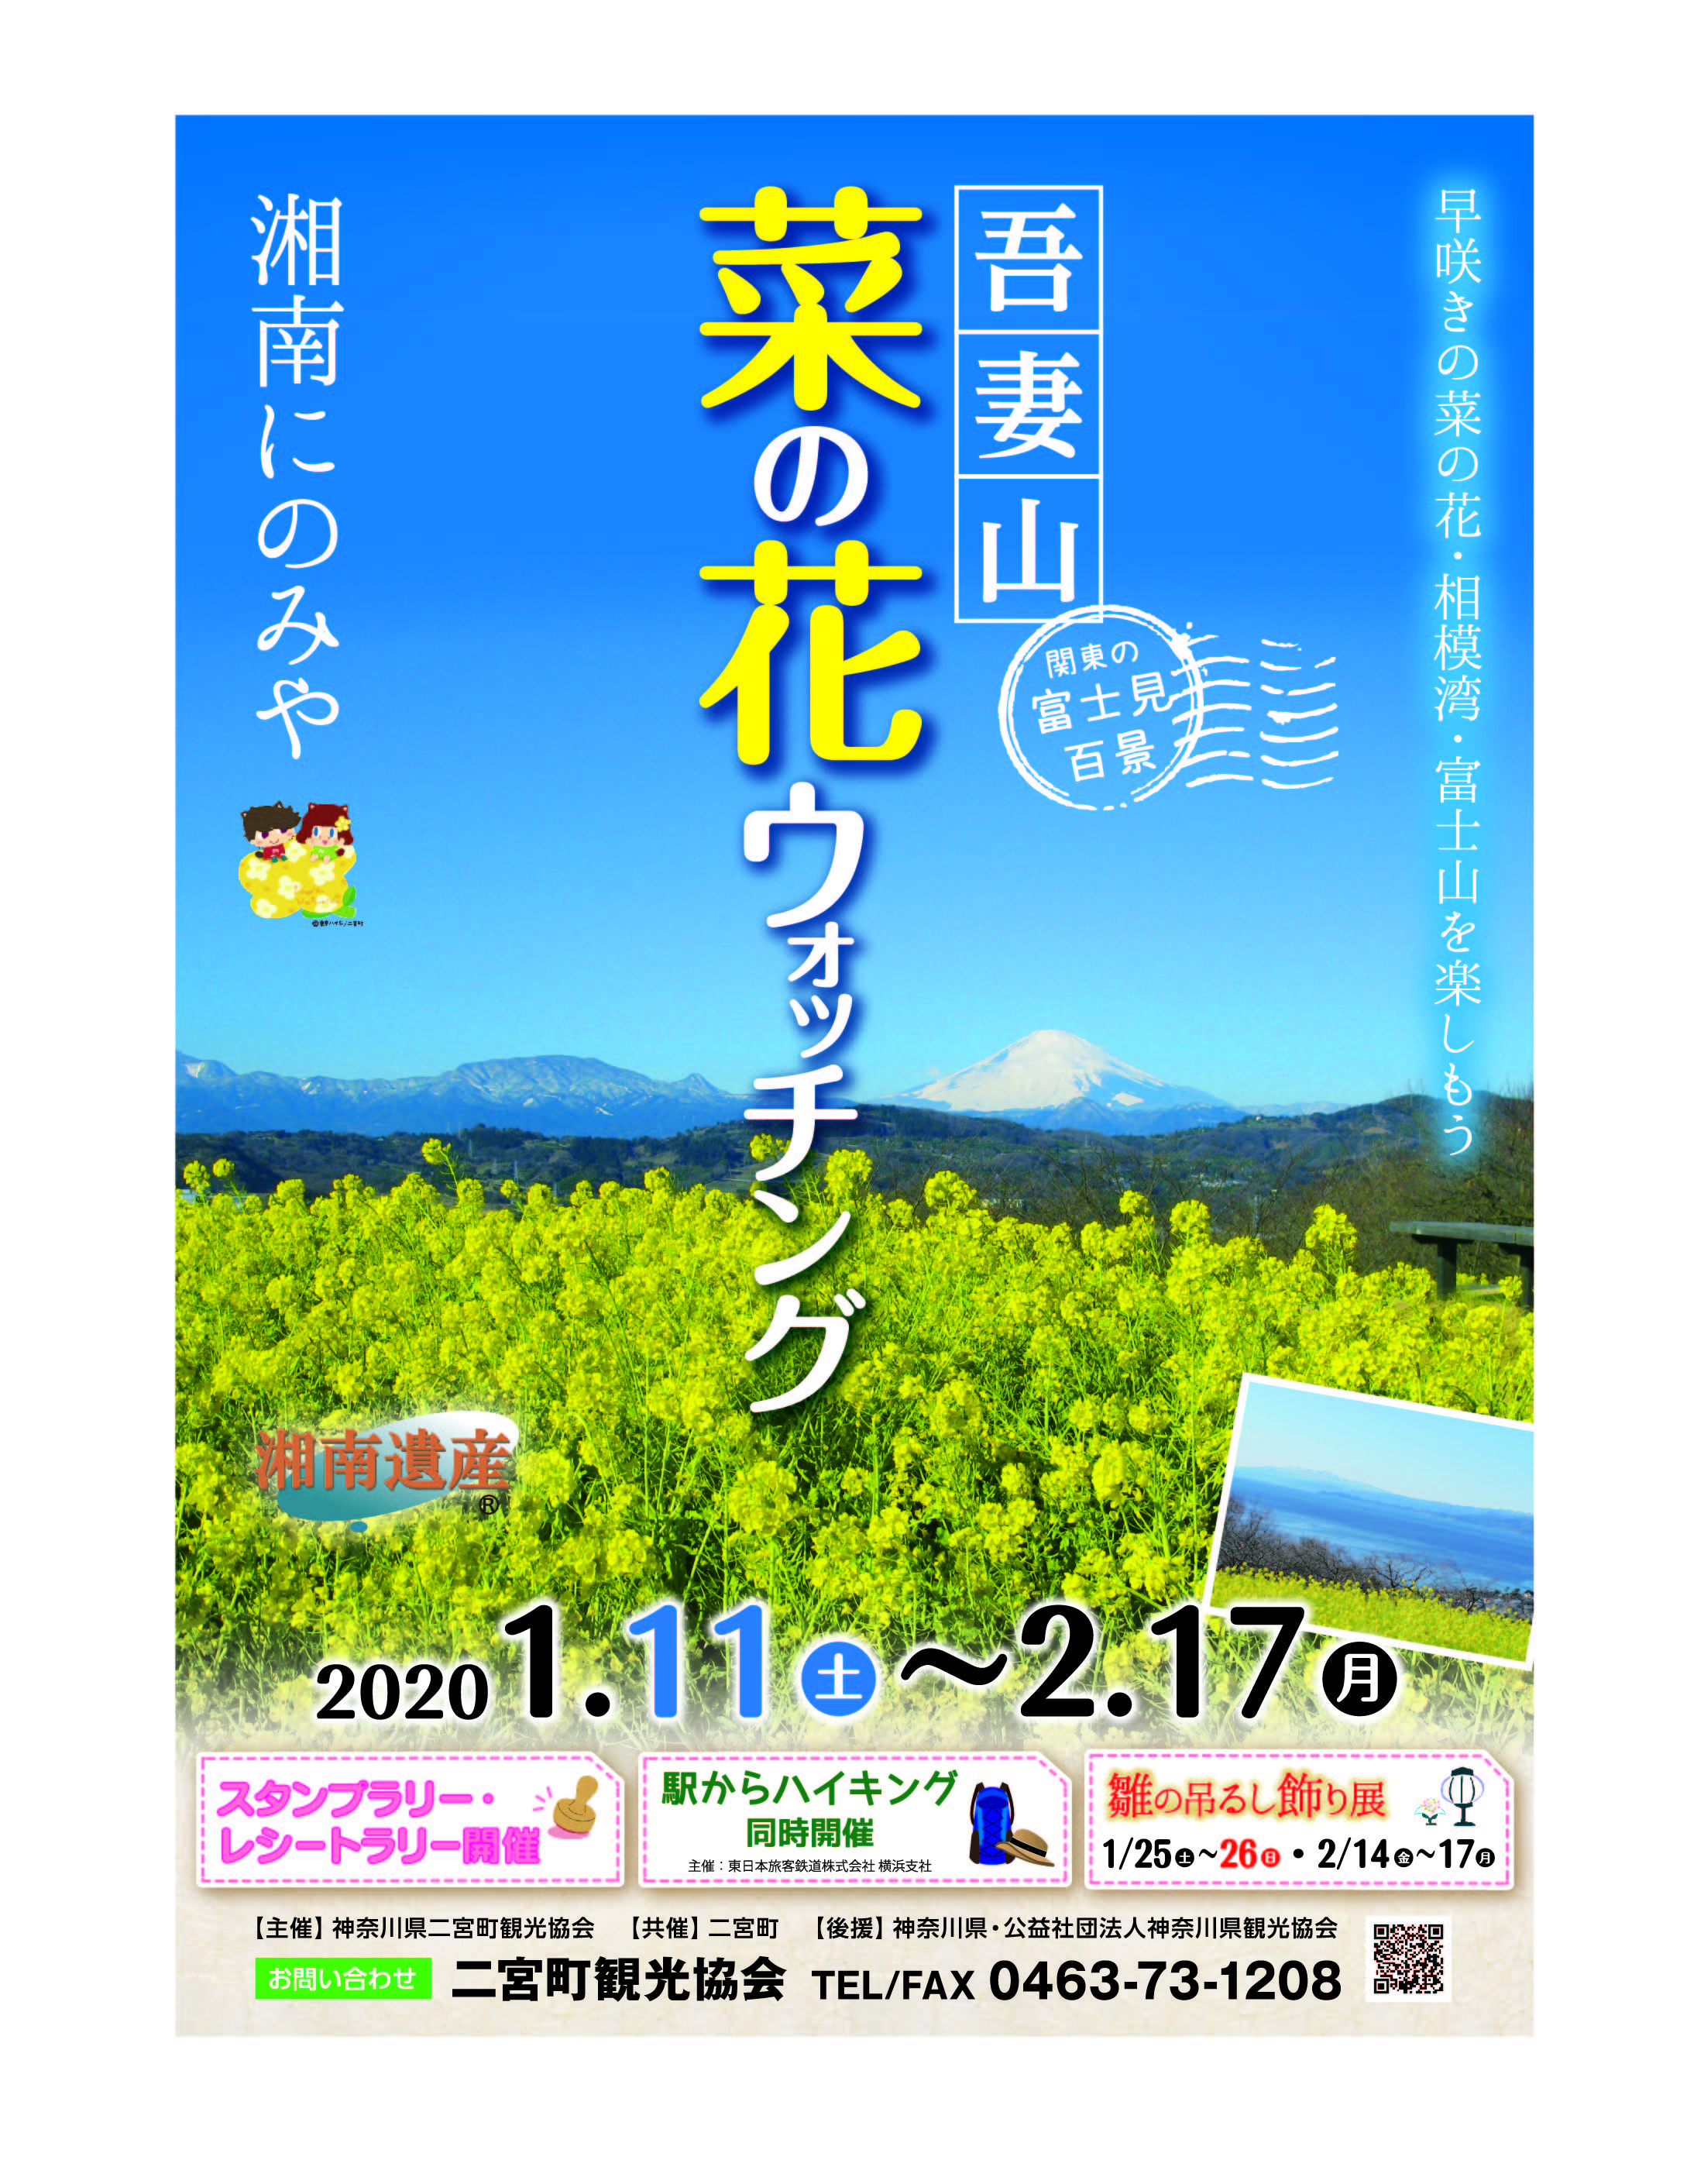 二宮町・吾妻山公園・菜の花ウォッチング2020が始まります